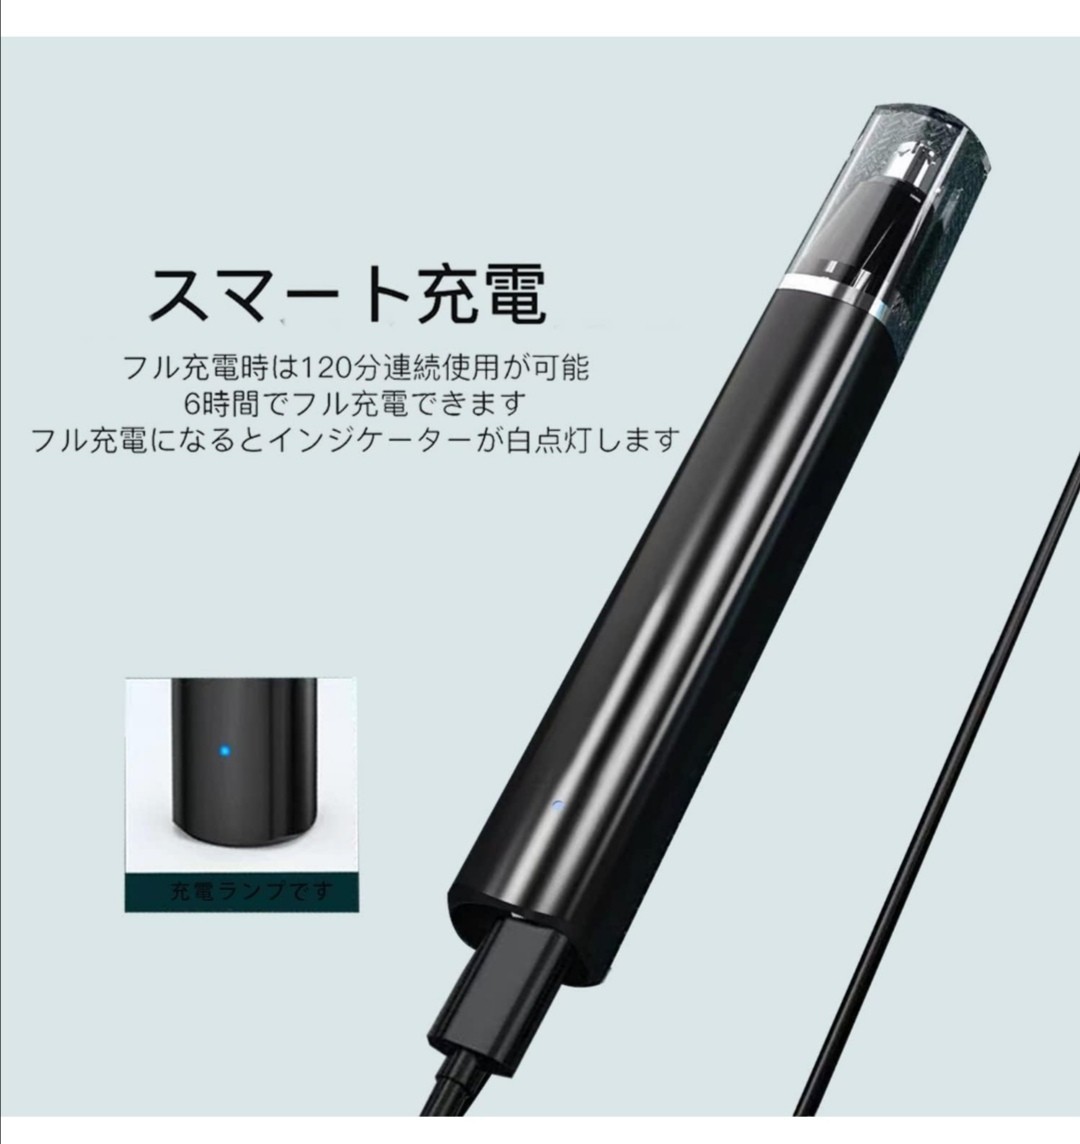 鼻毛カッター 電動鼻毛切り USB充電式全身用水洗い可能低騒音収納便利操作簡単